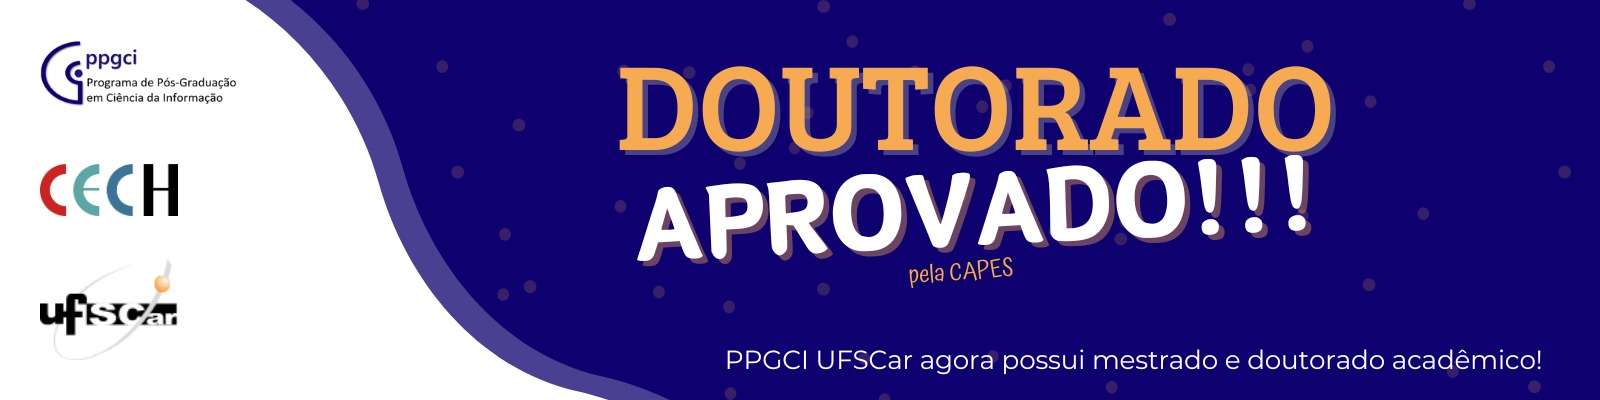 PPGCI UFSCar recebe a aprovação para o doutorado acadêmico